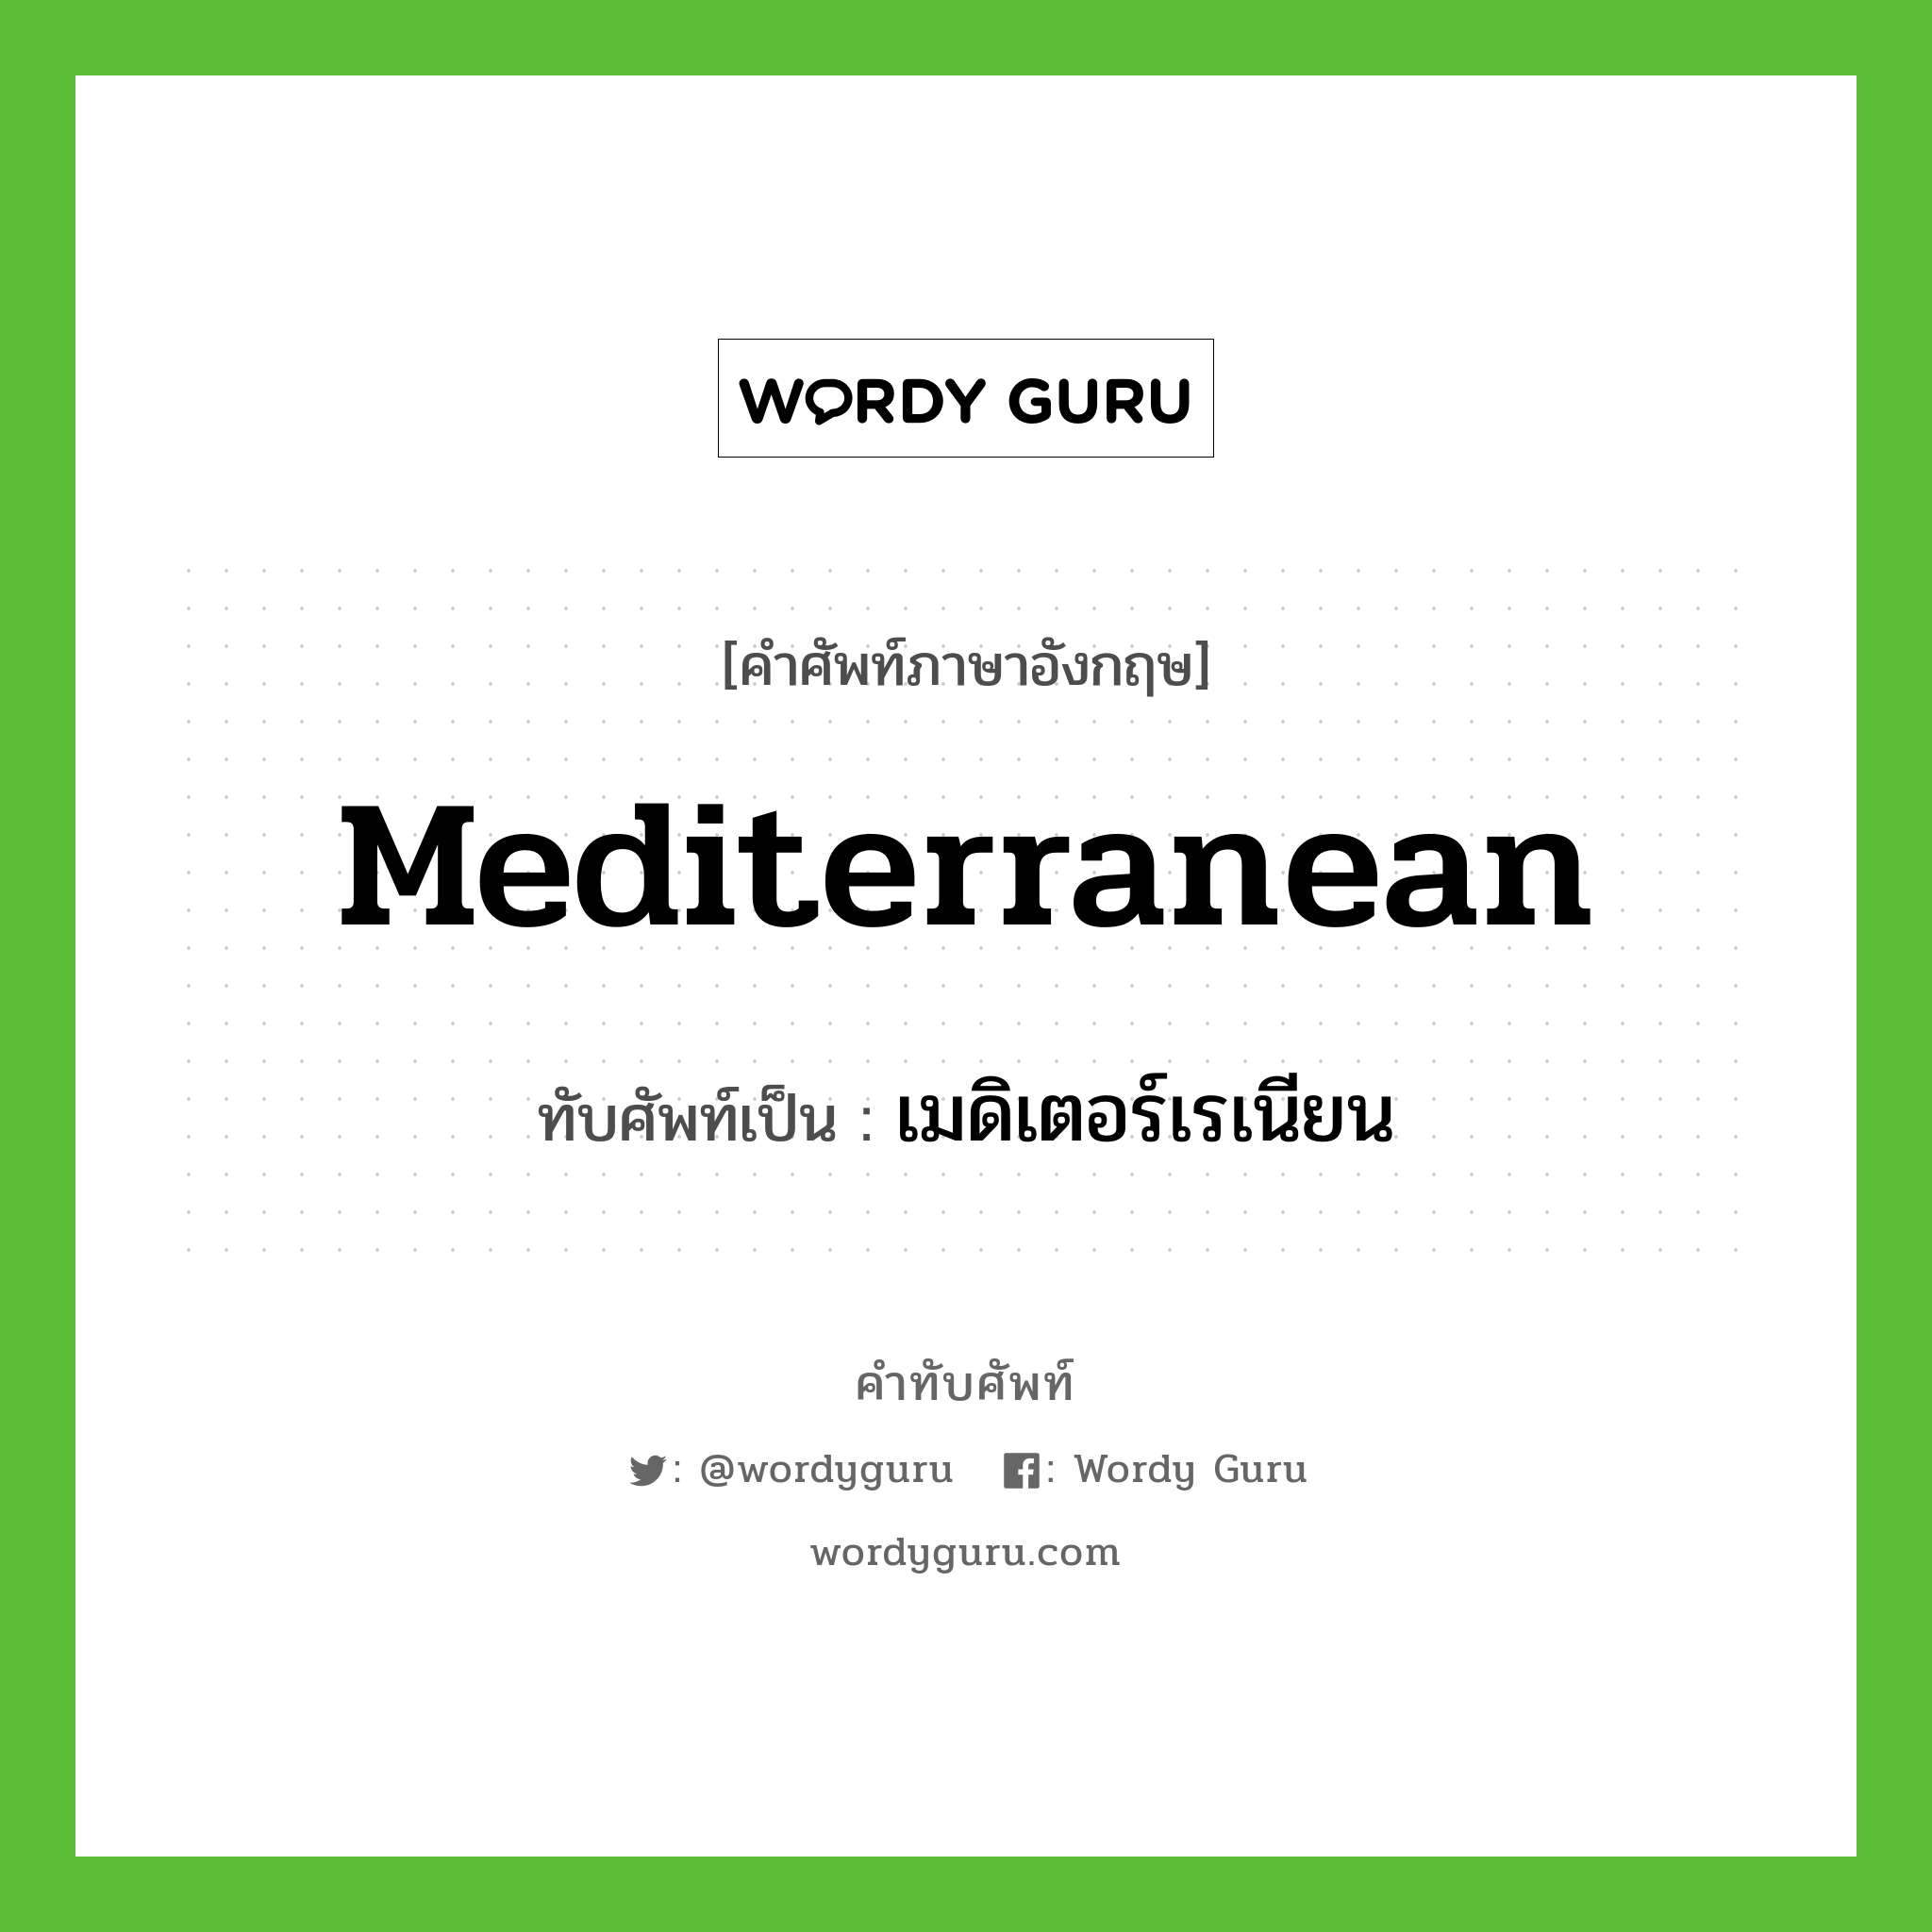 เมดิเตอร์เรเนียน เขียนอย่างไร?, คำศัพท์ภาษาอังกฤษ เมดิเตอร์เรเนียน ทับศัพท์เป็น Mediterranean